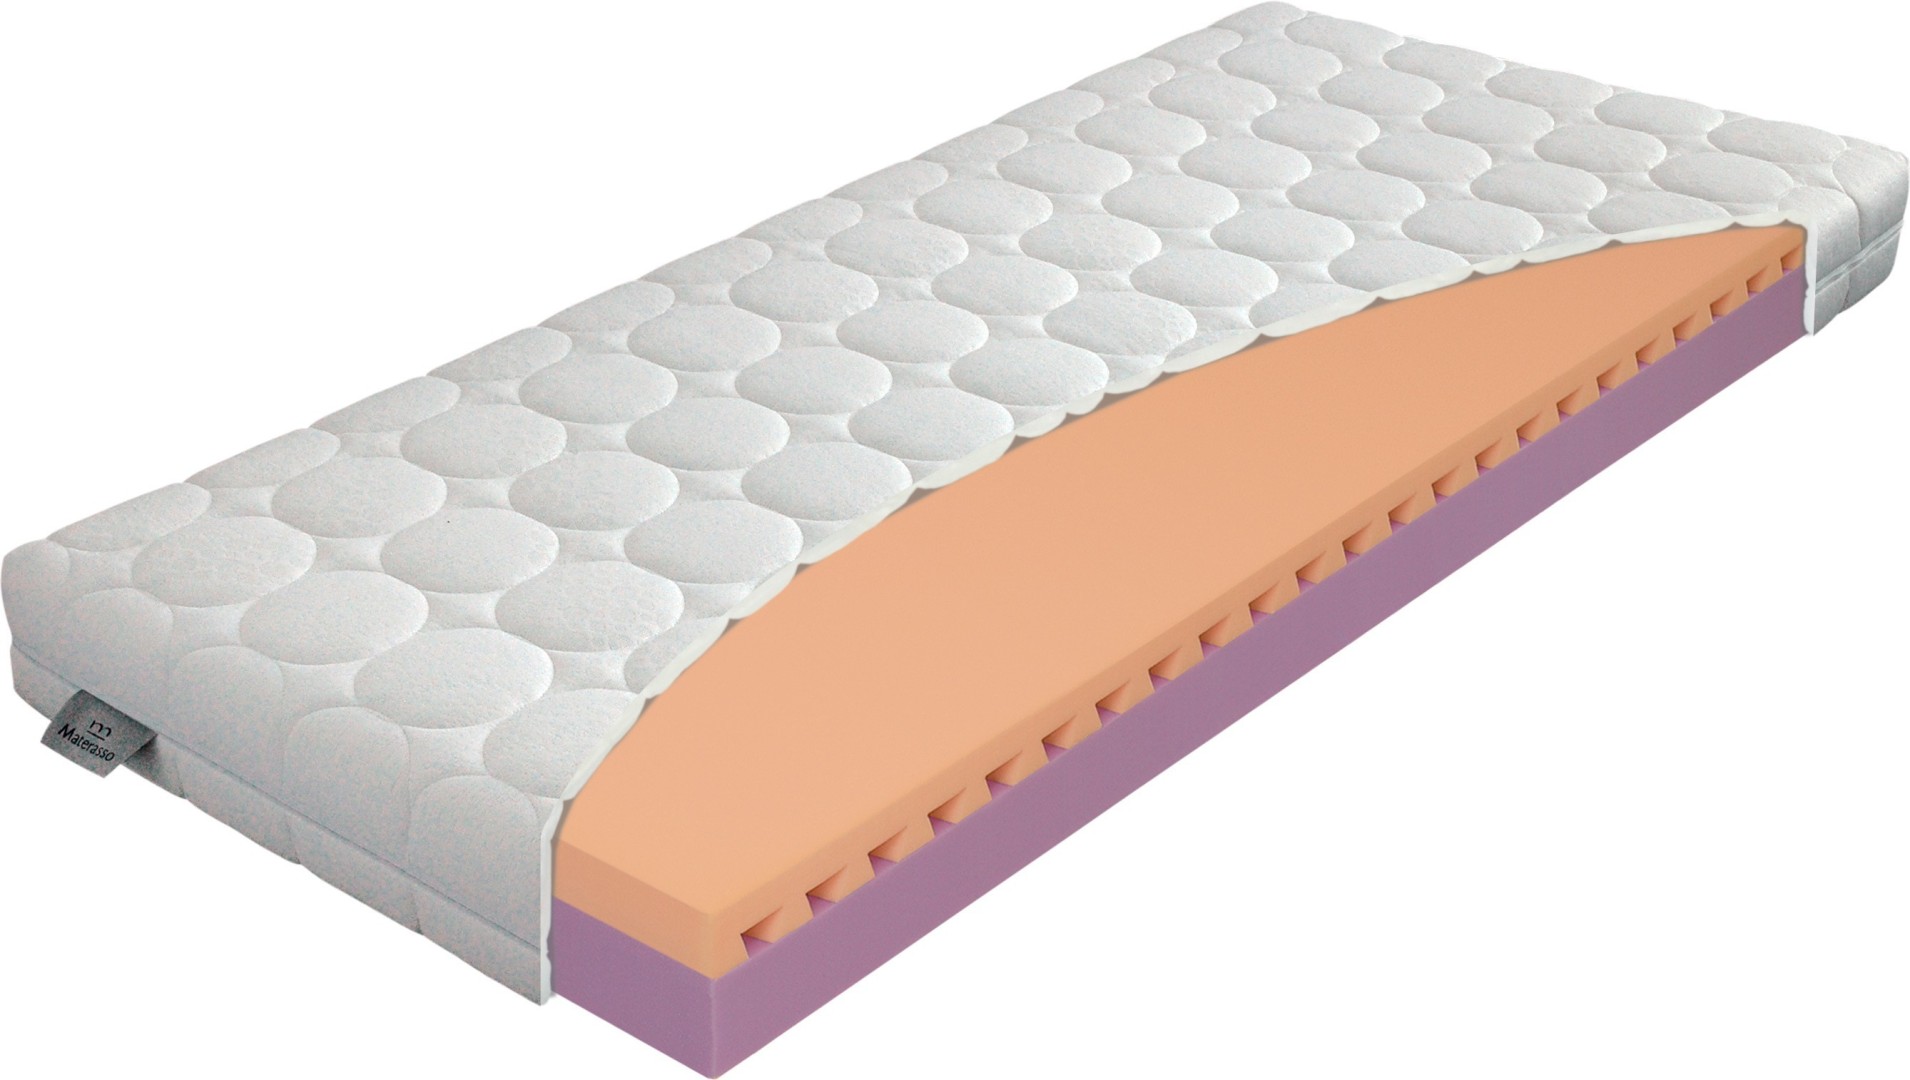 Materasso JUNIOR relax 20 cm - matrace pro zdravý spánek dětí 120 x 200 cm, snímatelný potah